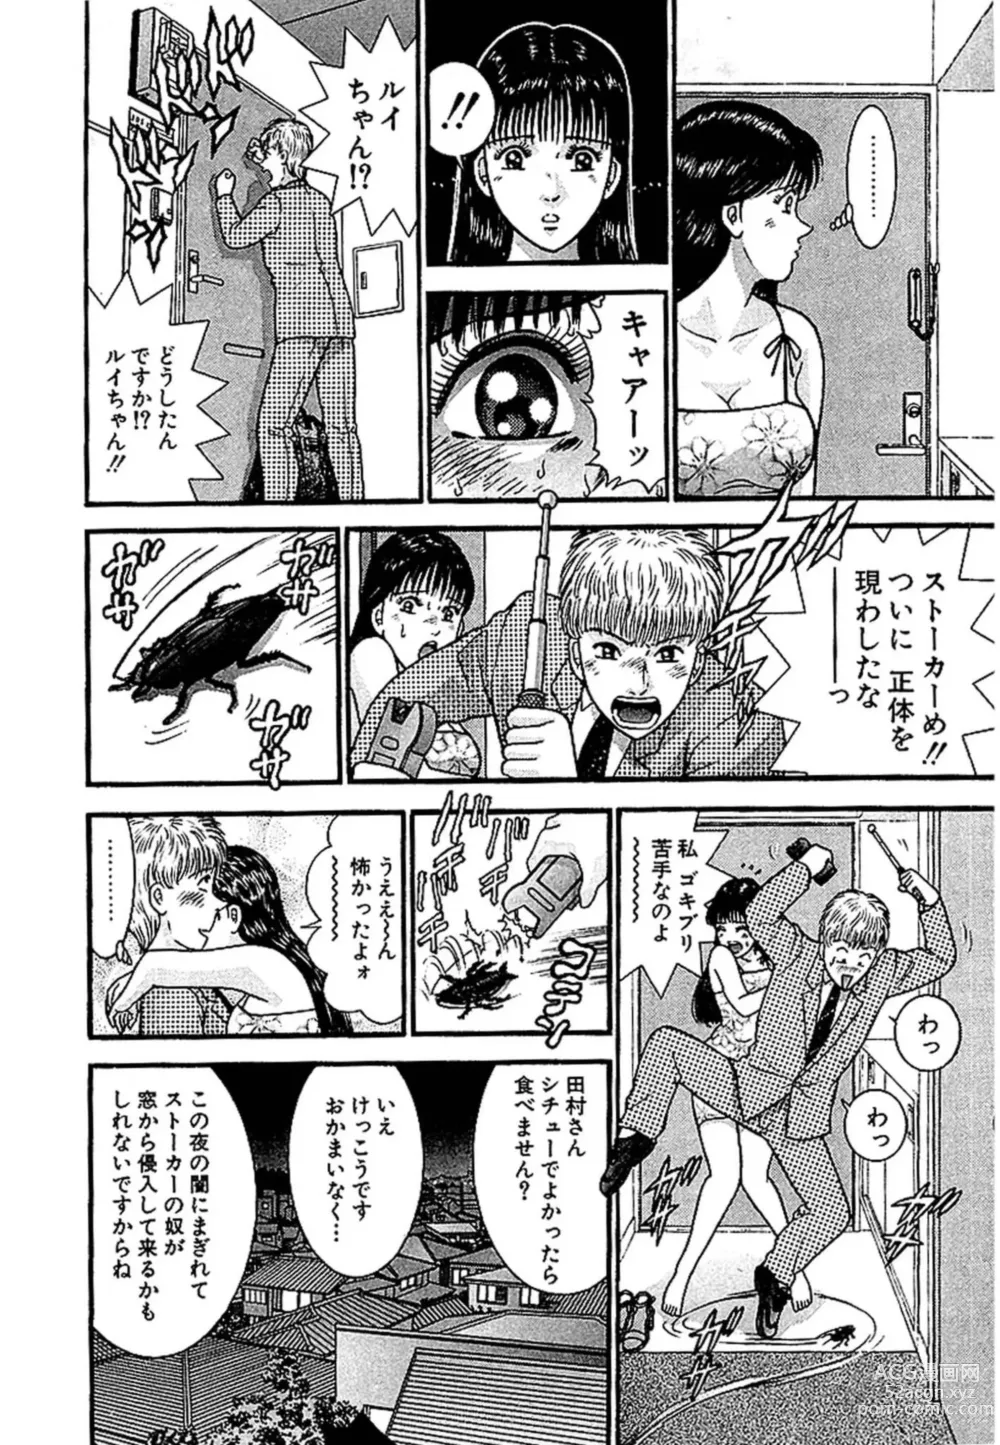 Page 187 of manga Sekkusuresu Shinsō-ban 1